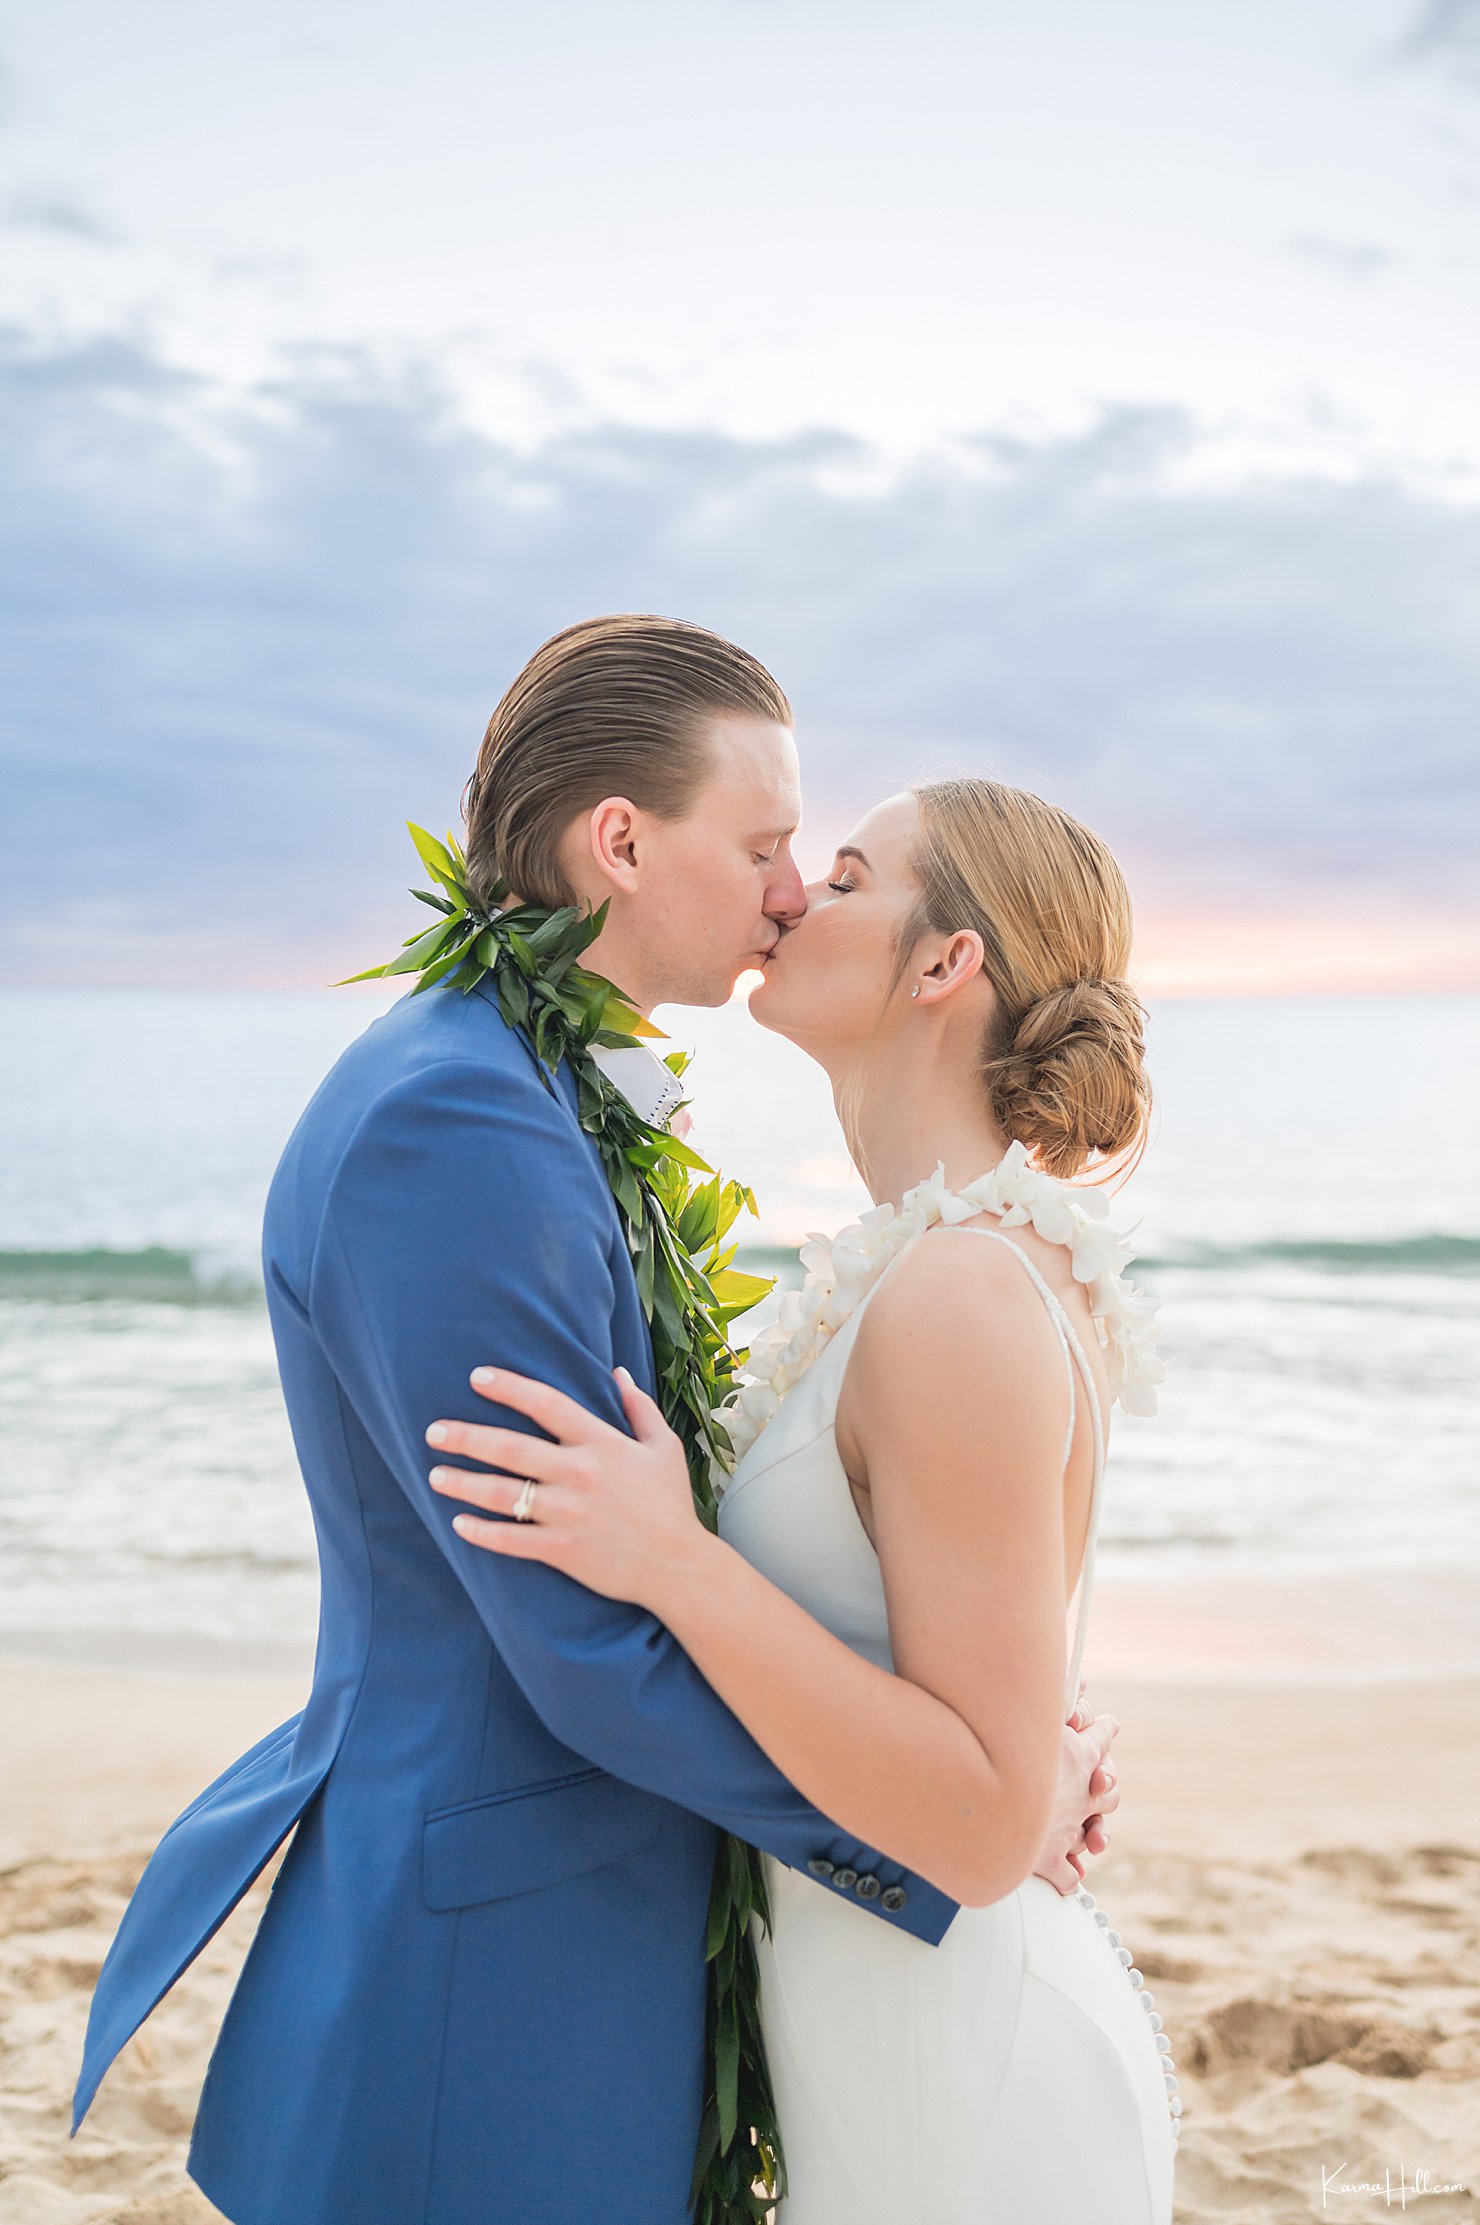 Wedding venues in Hawaii